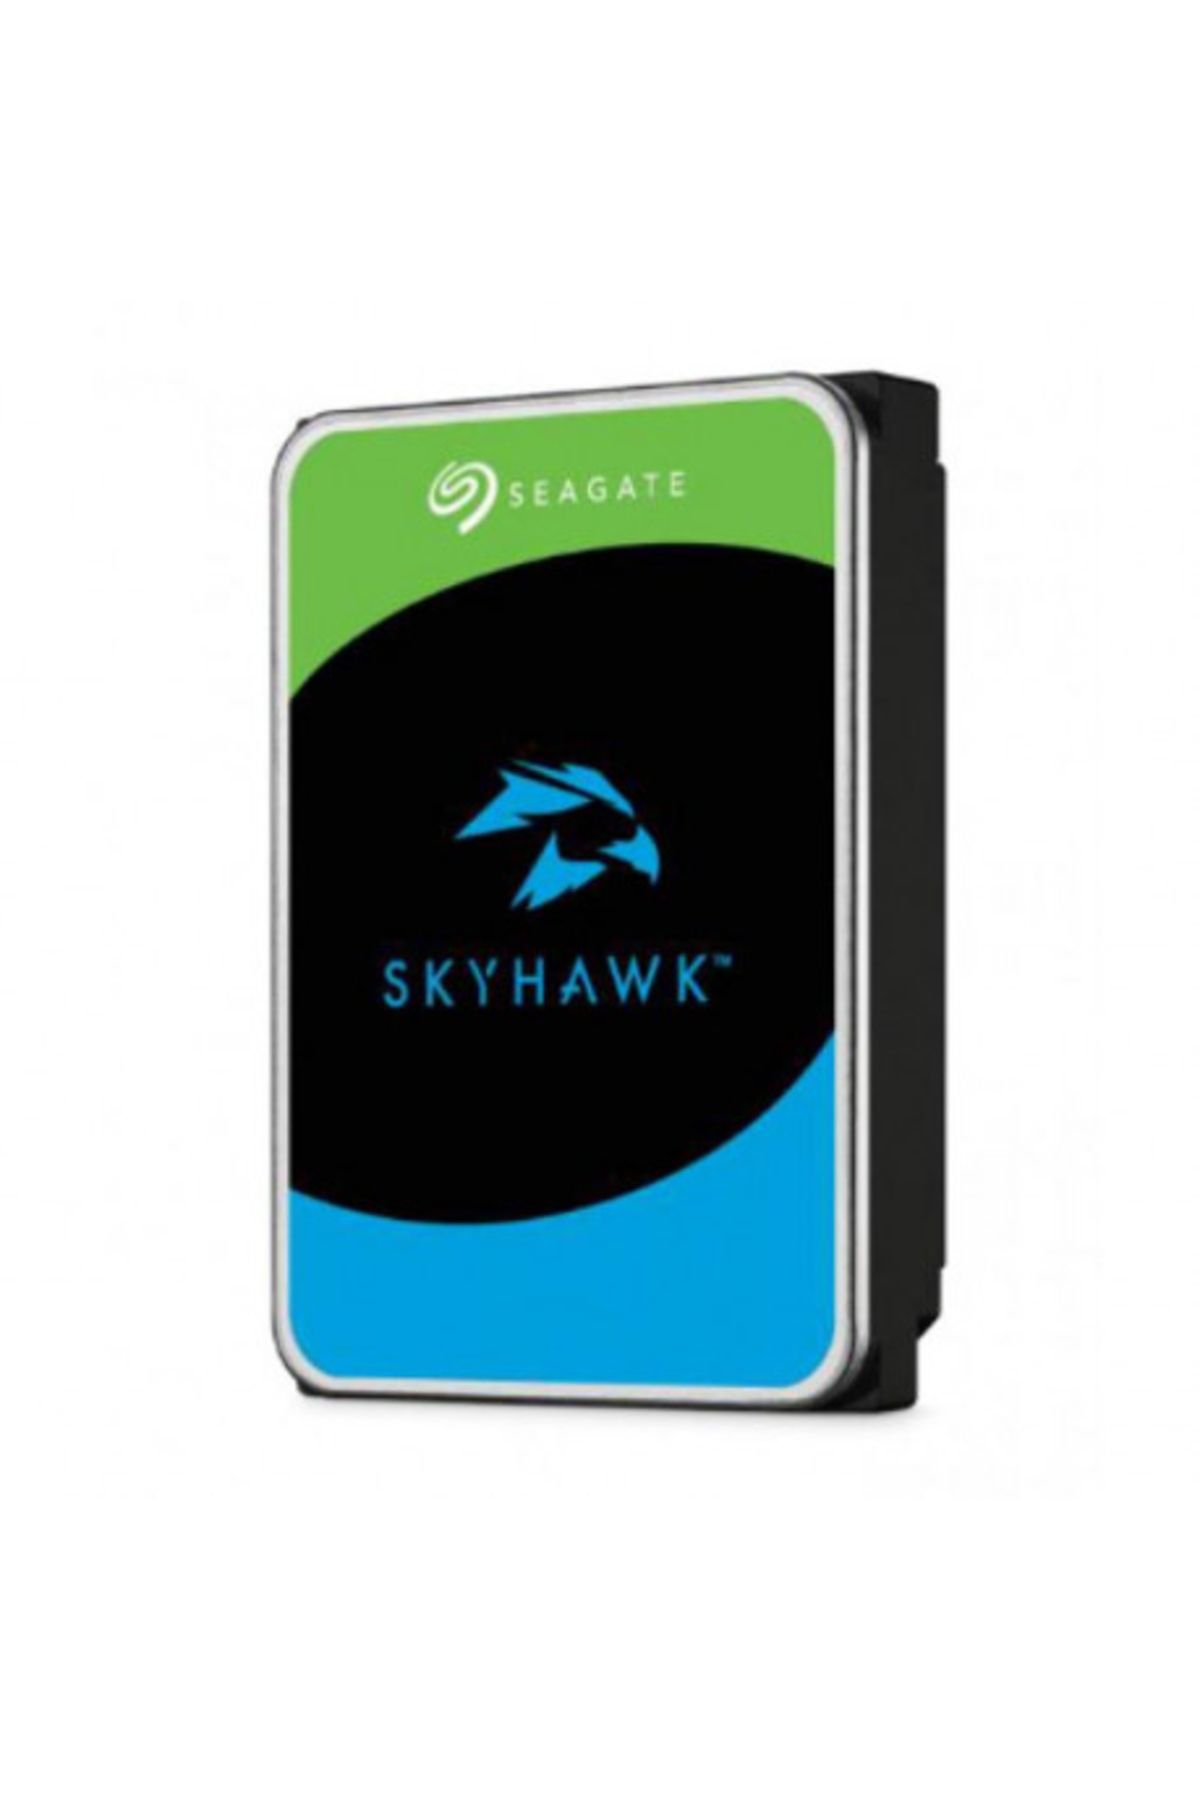 Seagate Skyhawk St1000vx013 3.5" 1tb 256mb 5400rpm 7/24 Güvenlik Diski